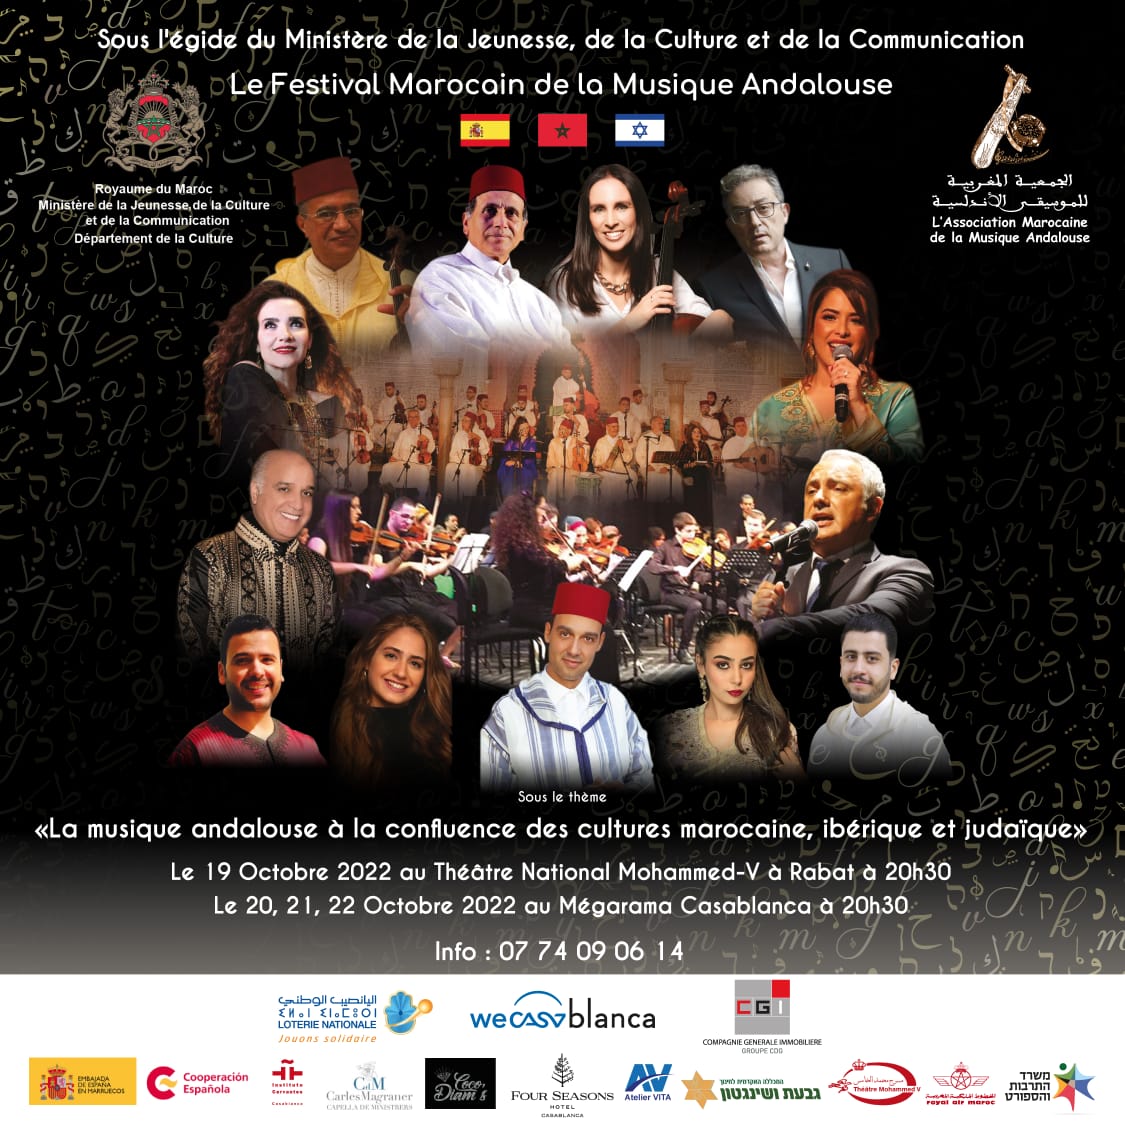 الجمعية المغربية للموسيقى الأندلسية(AMMA) تفتتح موسمها الثقافي 2022-2023 بإحياء “المهرجان المغربي للموسيقى الأندلسية”تحت شعار: “الموسيقى الأندلسية، ملتقى الثقافات المغربية، الإيبيرية واليهودية”